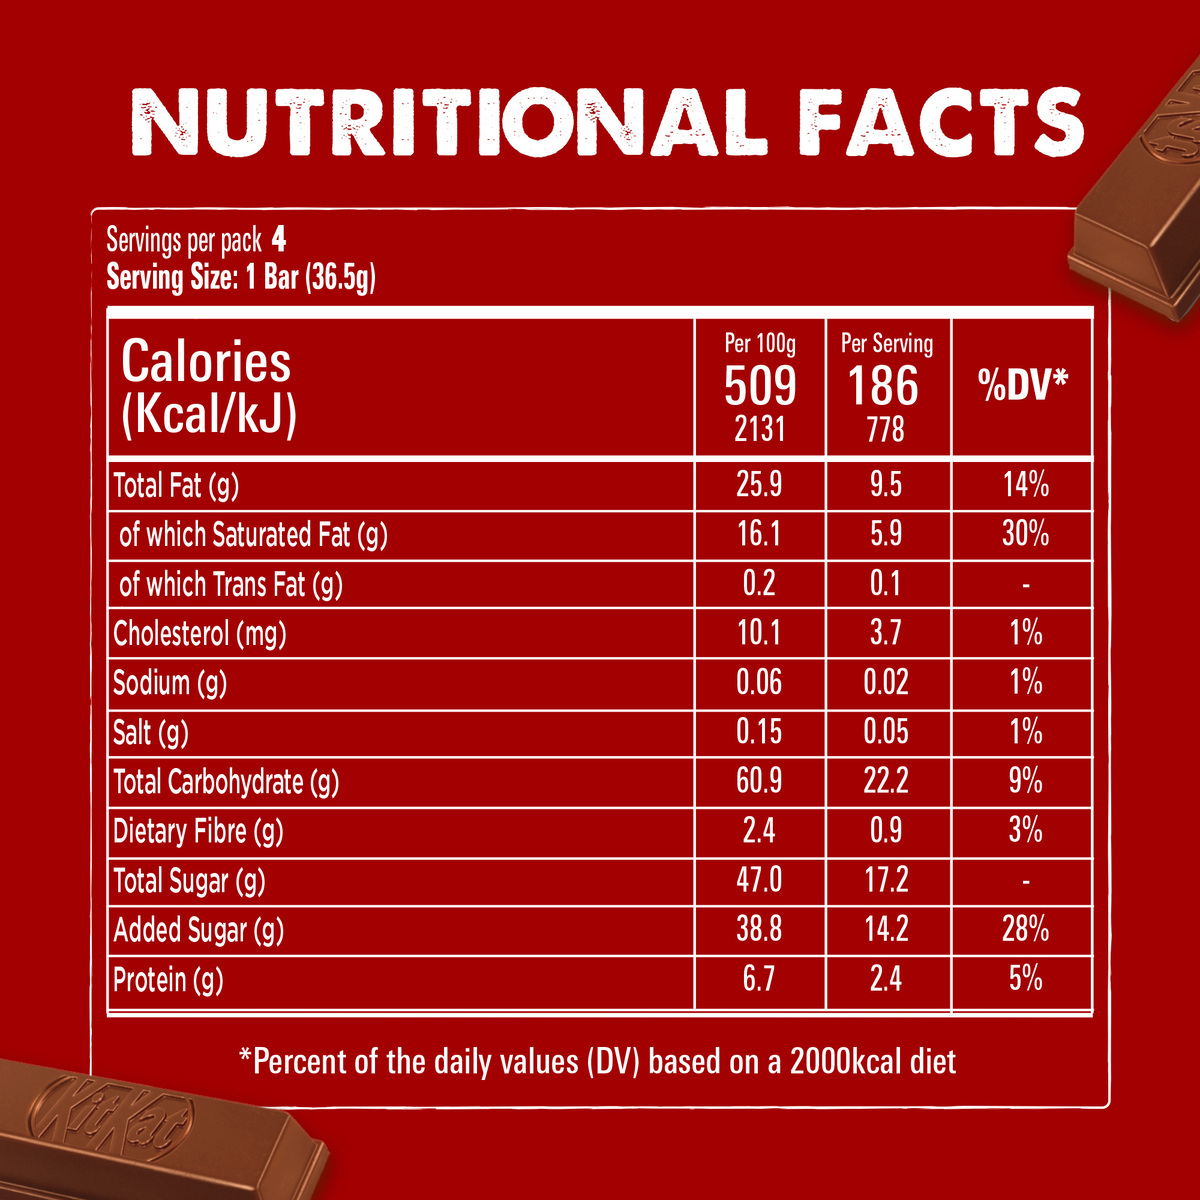 Nestle KitKat 4 Fingers Chocolate Value Pack 4 x 36.5 g 2 pkt